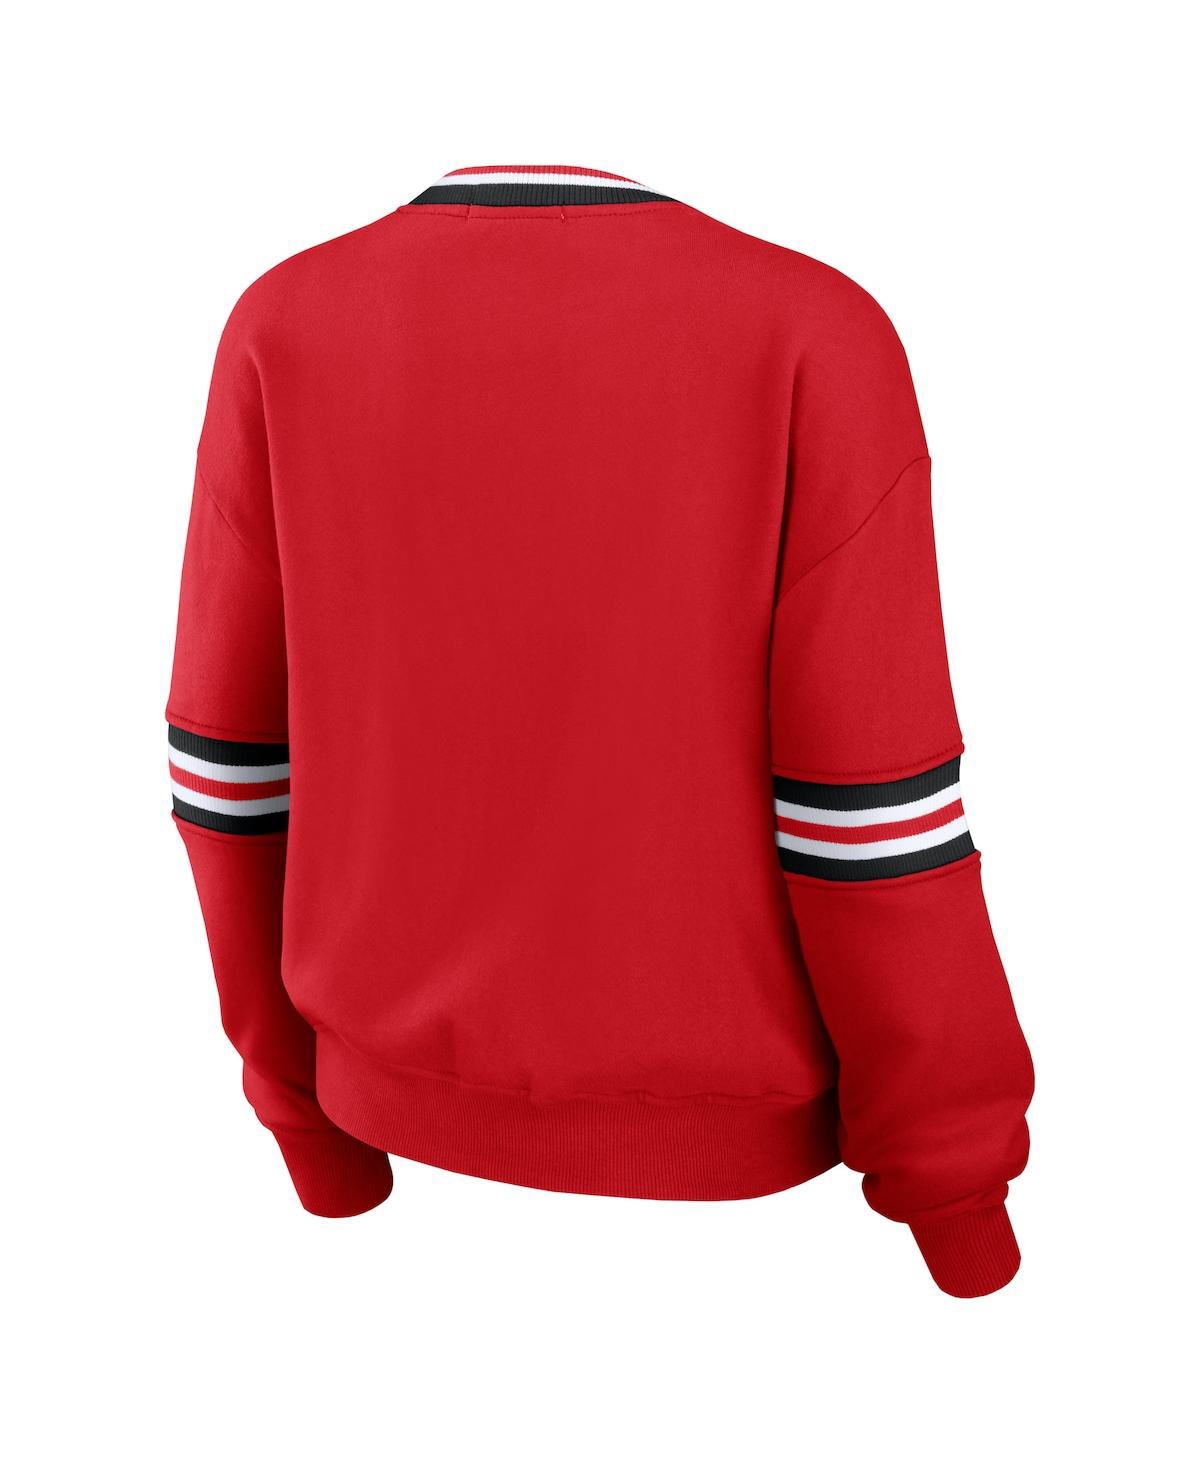 Shop Wear By Erin Andrews Women's  Red Distressed Nebraska Huskers Vintage-like Pullover Sweatshirt